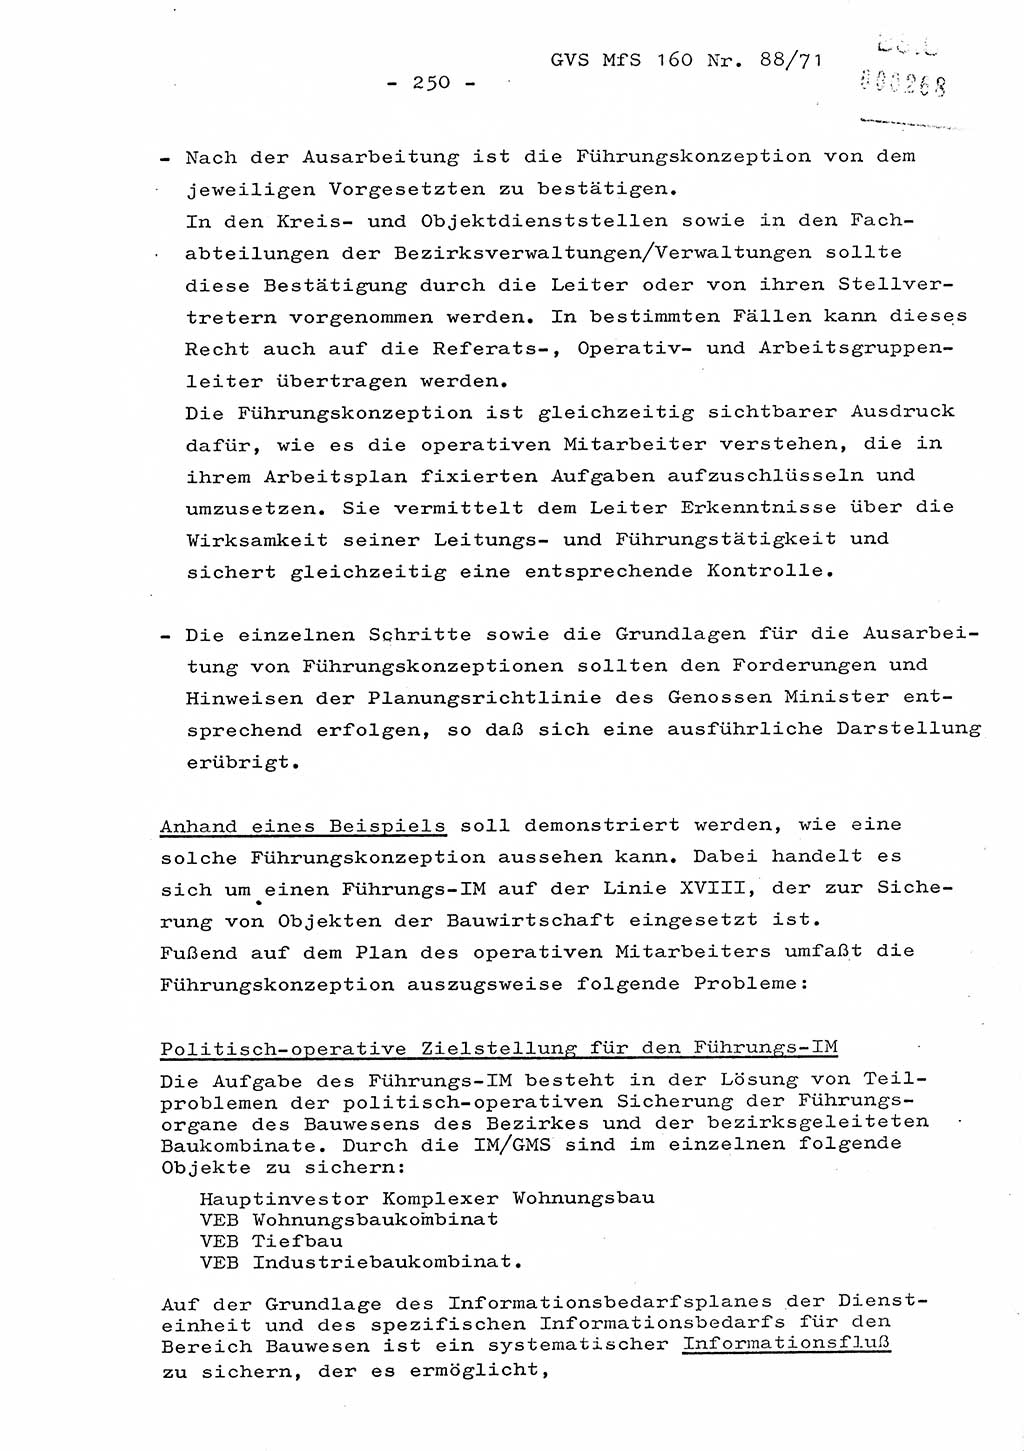 Dissertation Oberstleutnant Josef Schwarz (BV Schwerin), Major Fritz Amm (JHS), Hauptmann Peter Gräßler (JHS), Ministerium für Staatssicherheit (MfS) [Deutsche Demokratische Republik (DDR)], Juristische Hochschule (JHS), Geheime Verschlußsache (GVS) 160-88/71, Potsdam 1972, Seite 250 (Diss. MfS DDR JHS GVS 160-88/71 1972, S. 250)